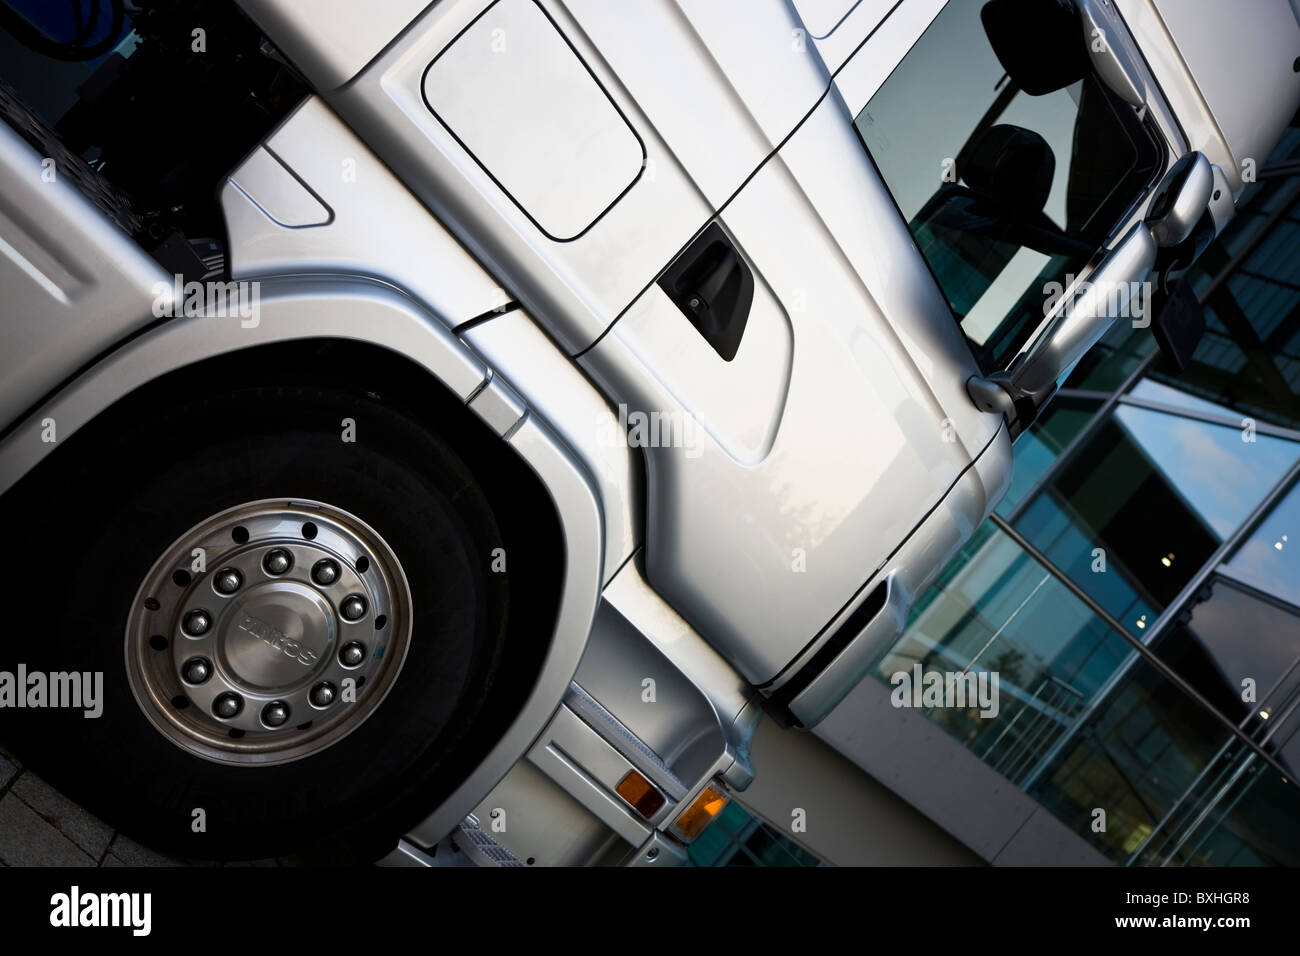 Autocarro Scania semi carrello automobile come mezzo di trasporto camion di trasporto cabina luce del settore autotrasporto logistica veicolo argento Foto Stock